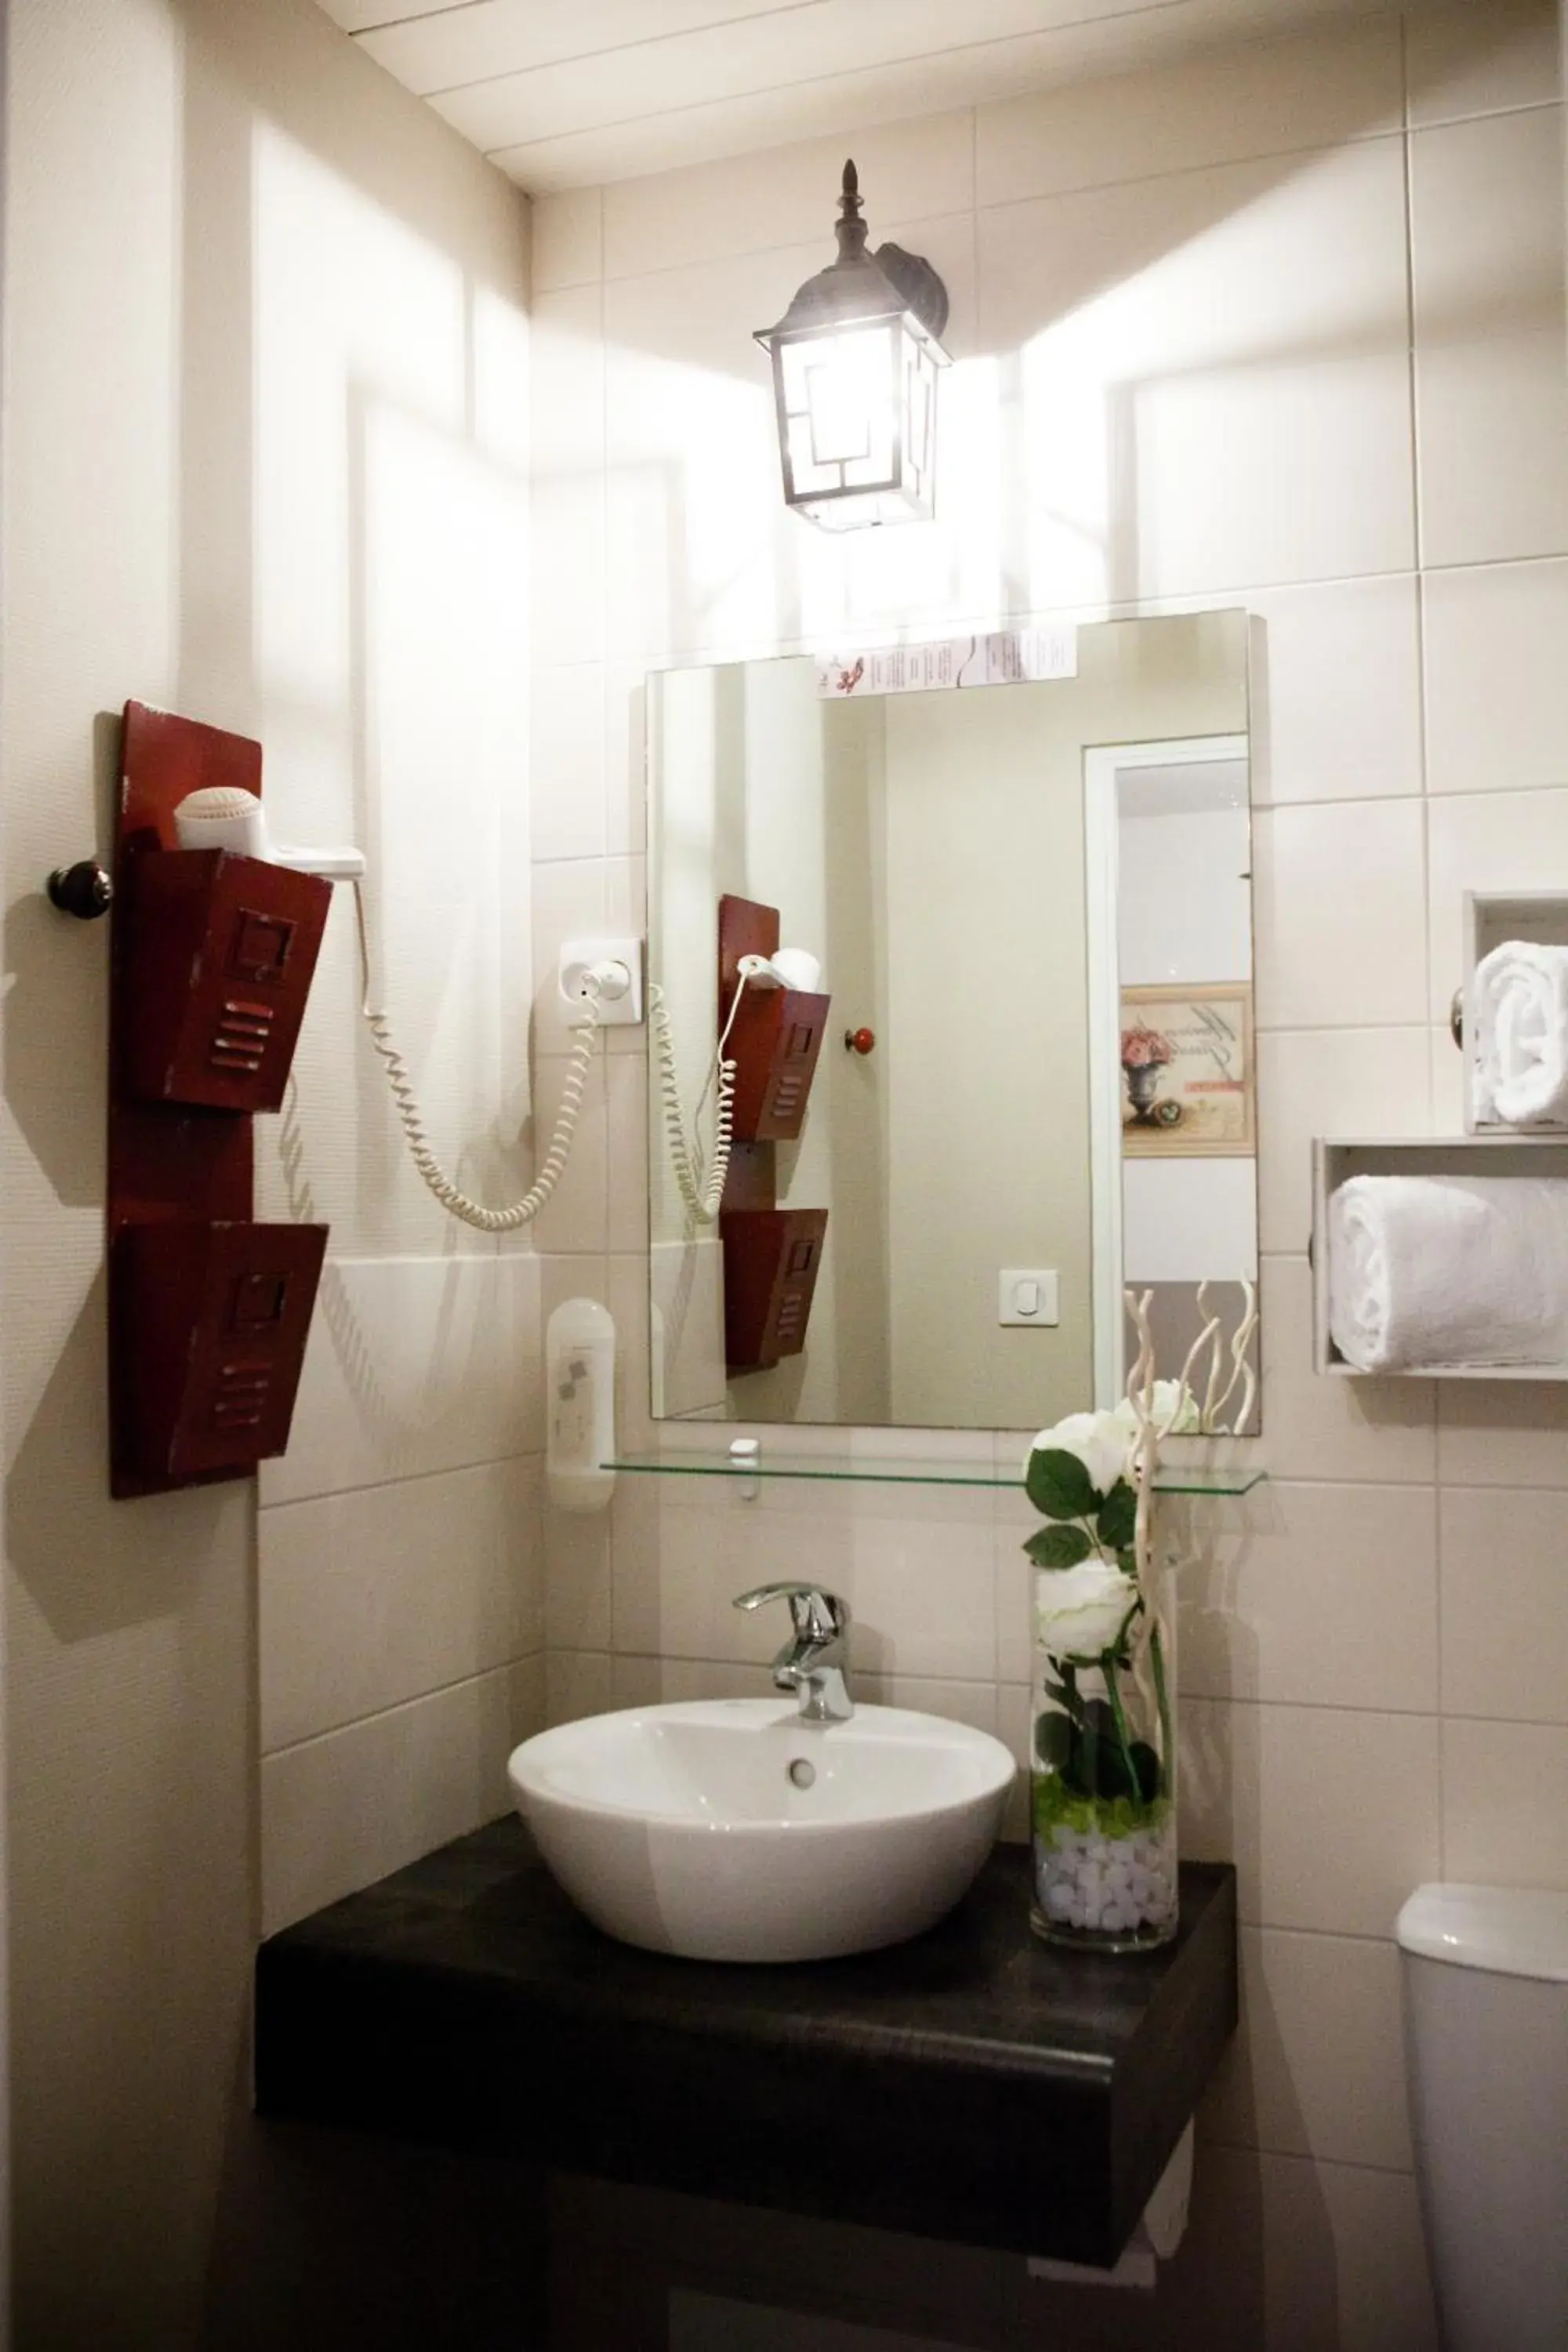 Bathroom in Hotel Abat Jour